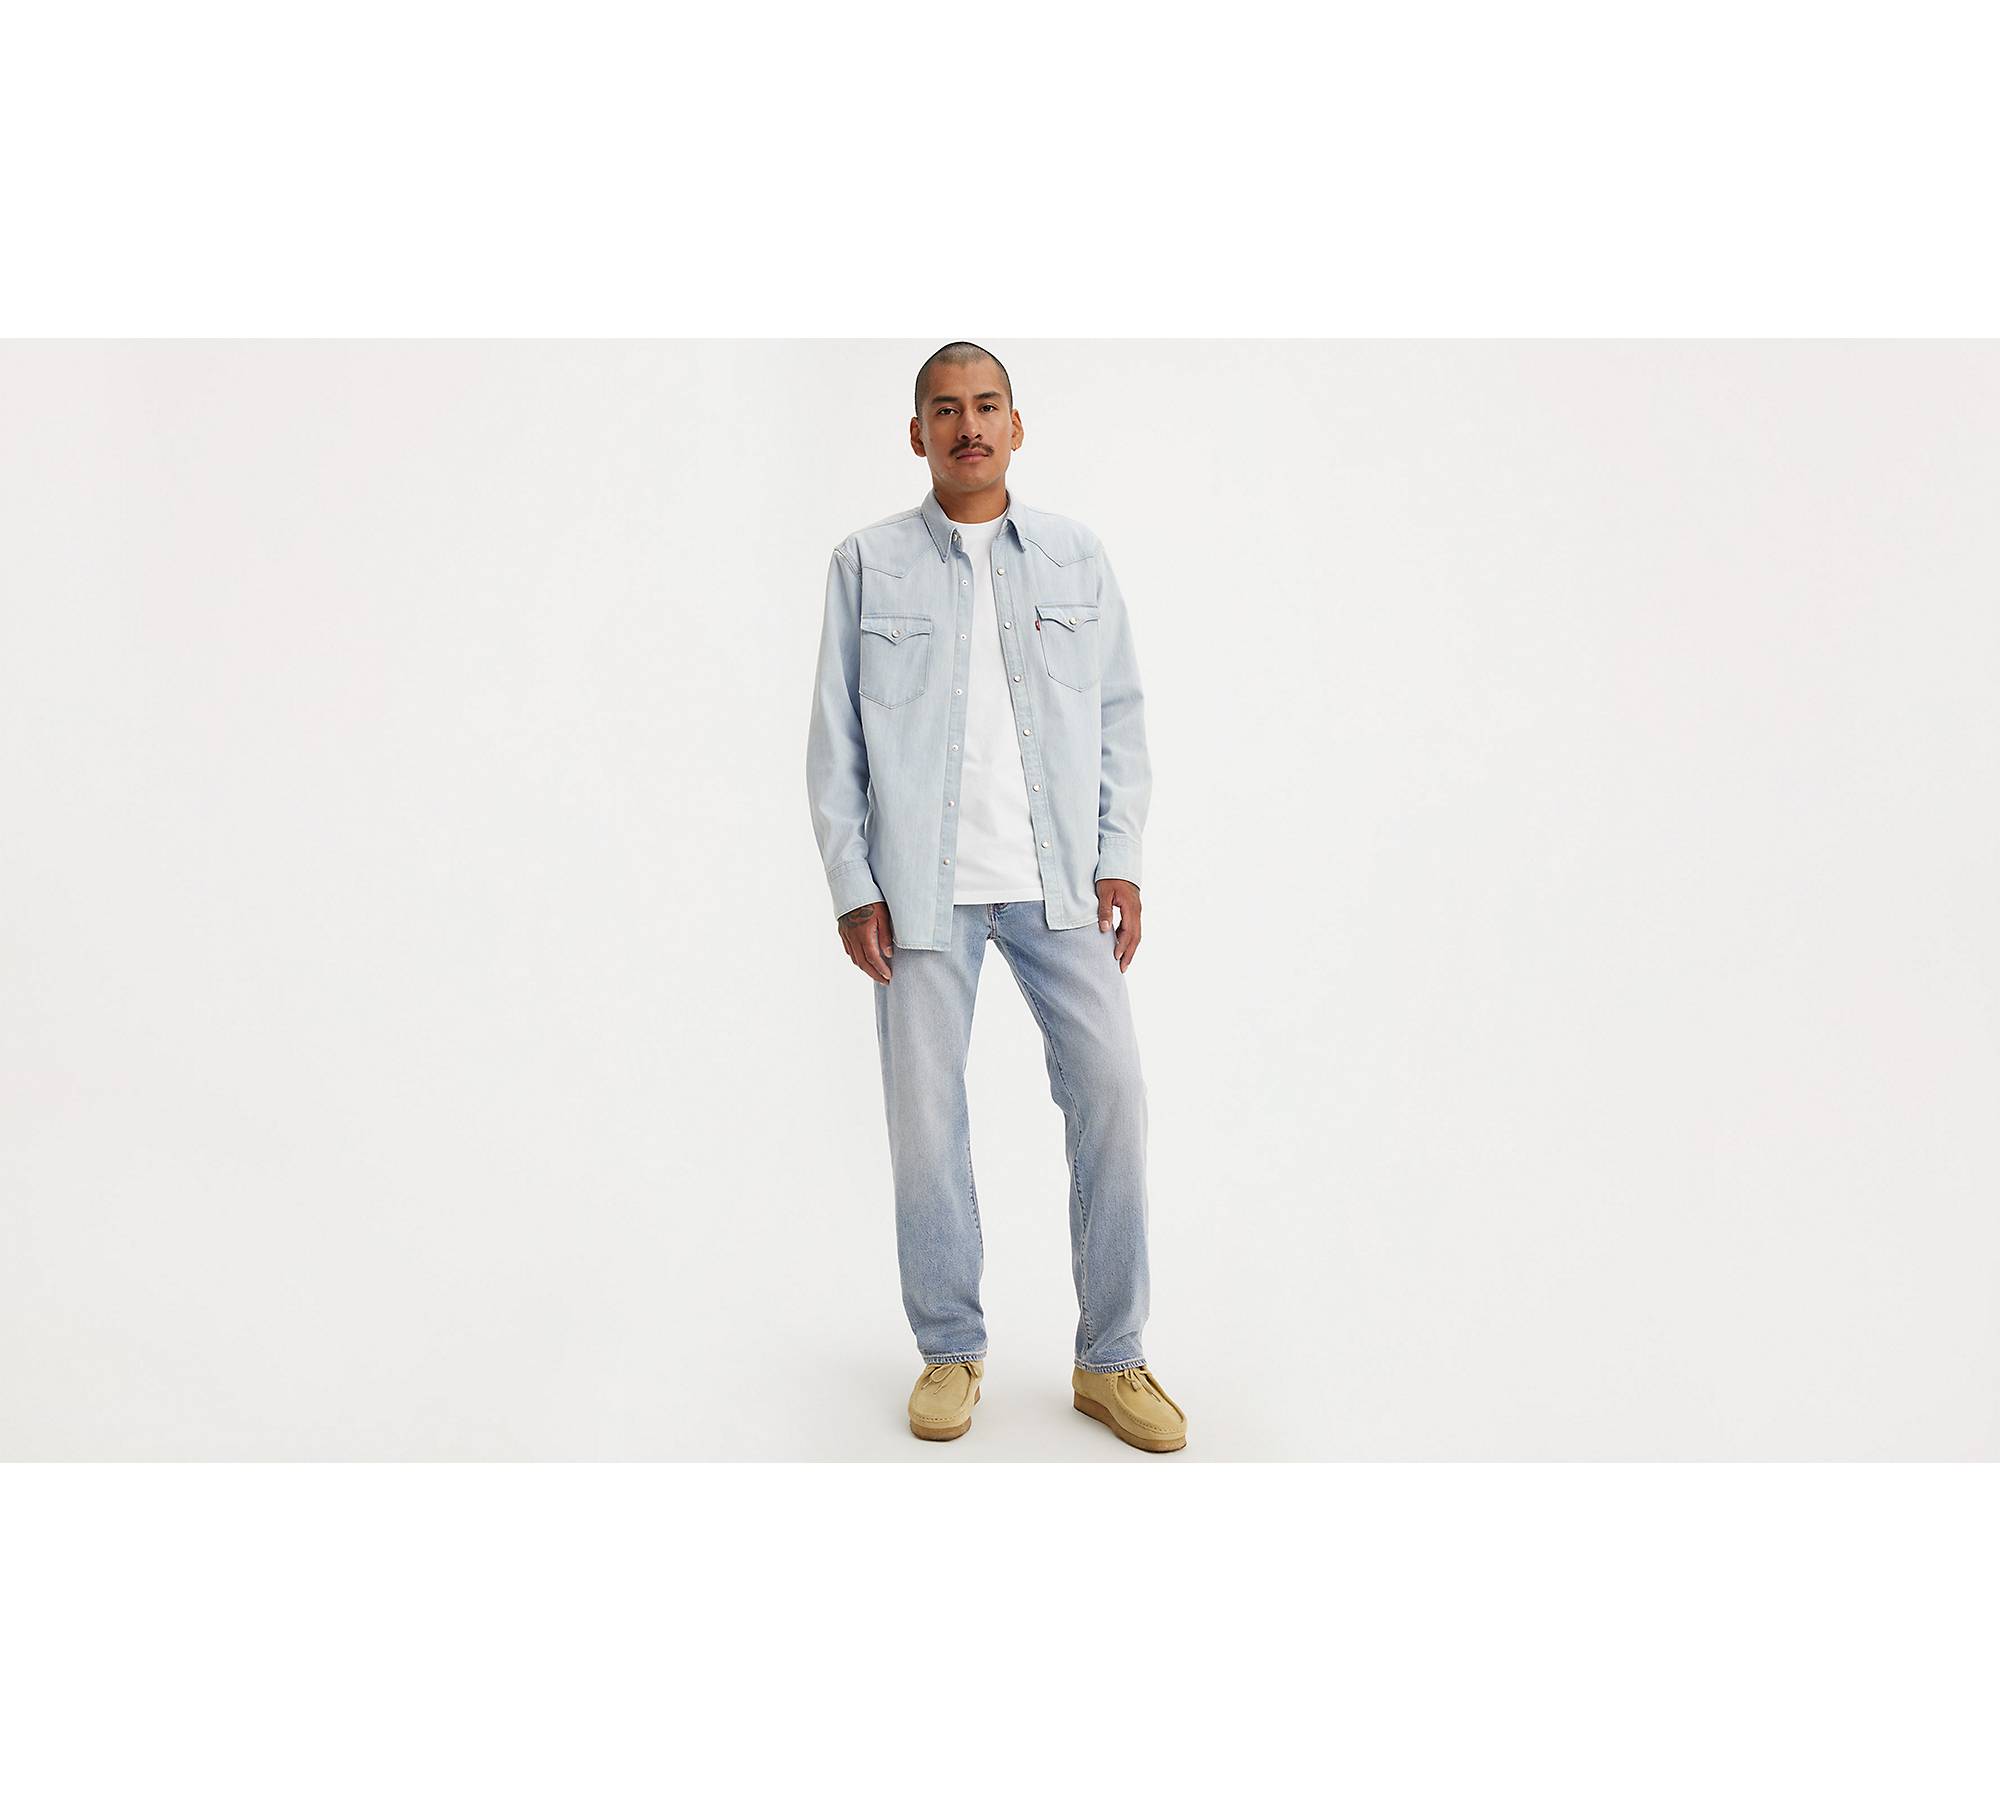 551™ Z Authentic Straight Fit Men's Jeans - Light Wash | Levi's® US